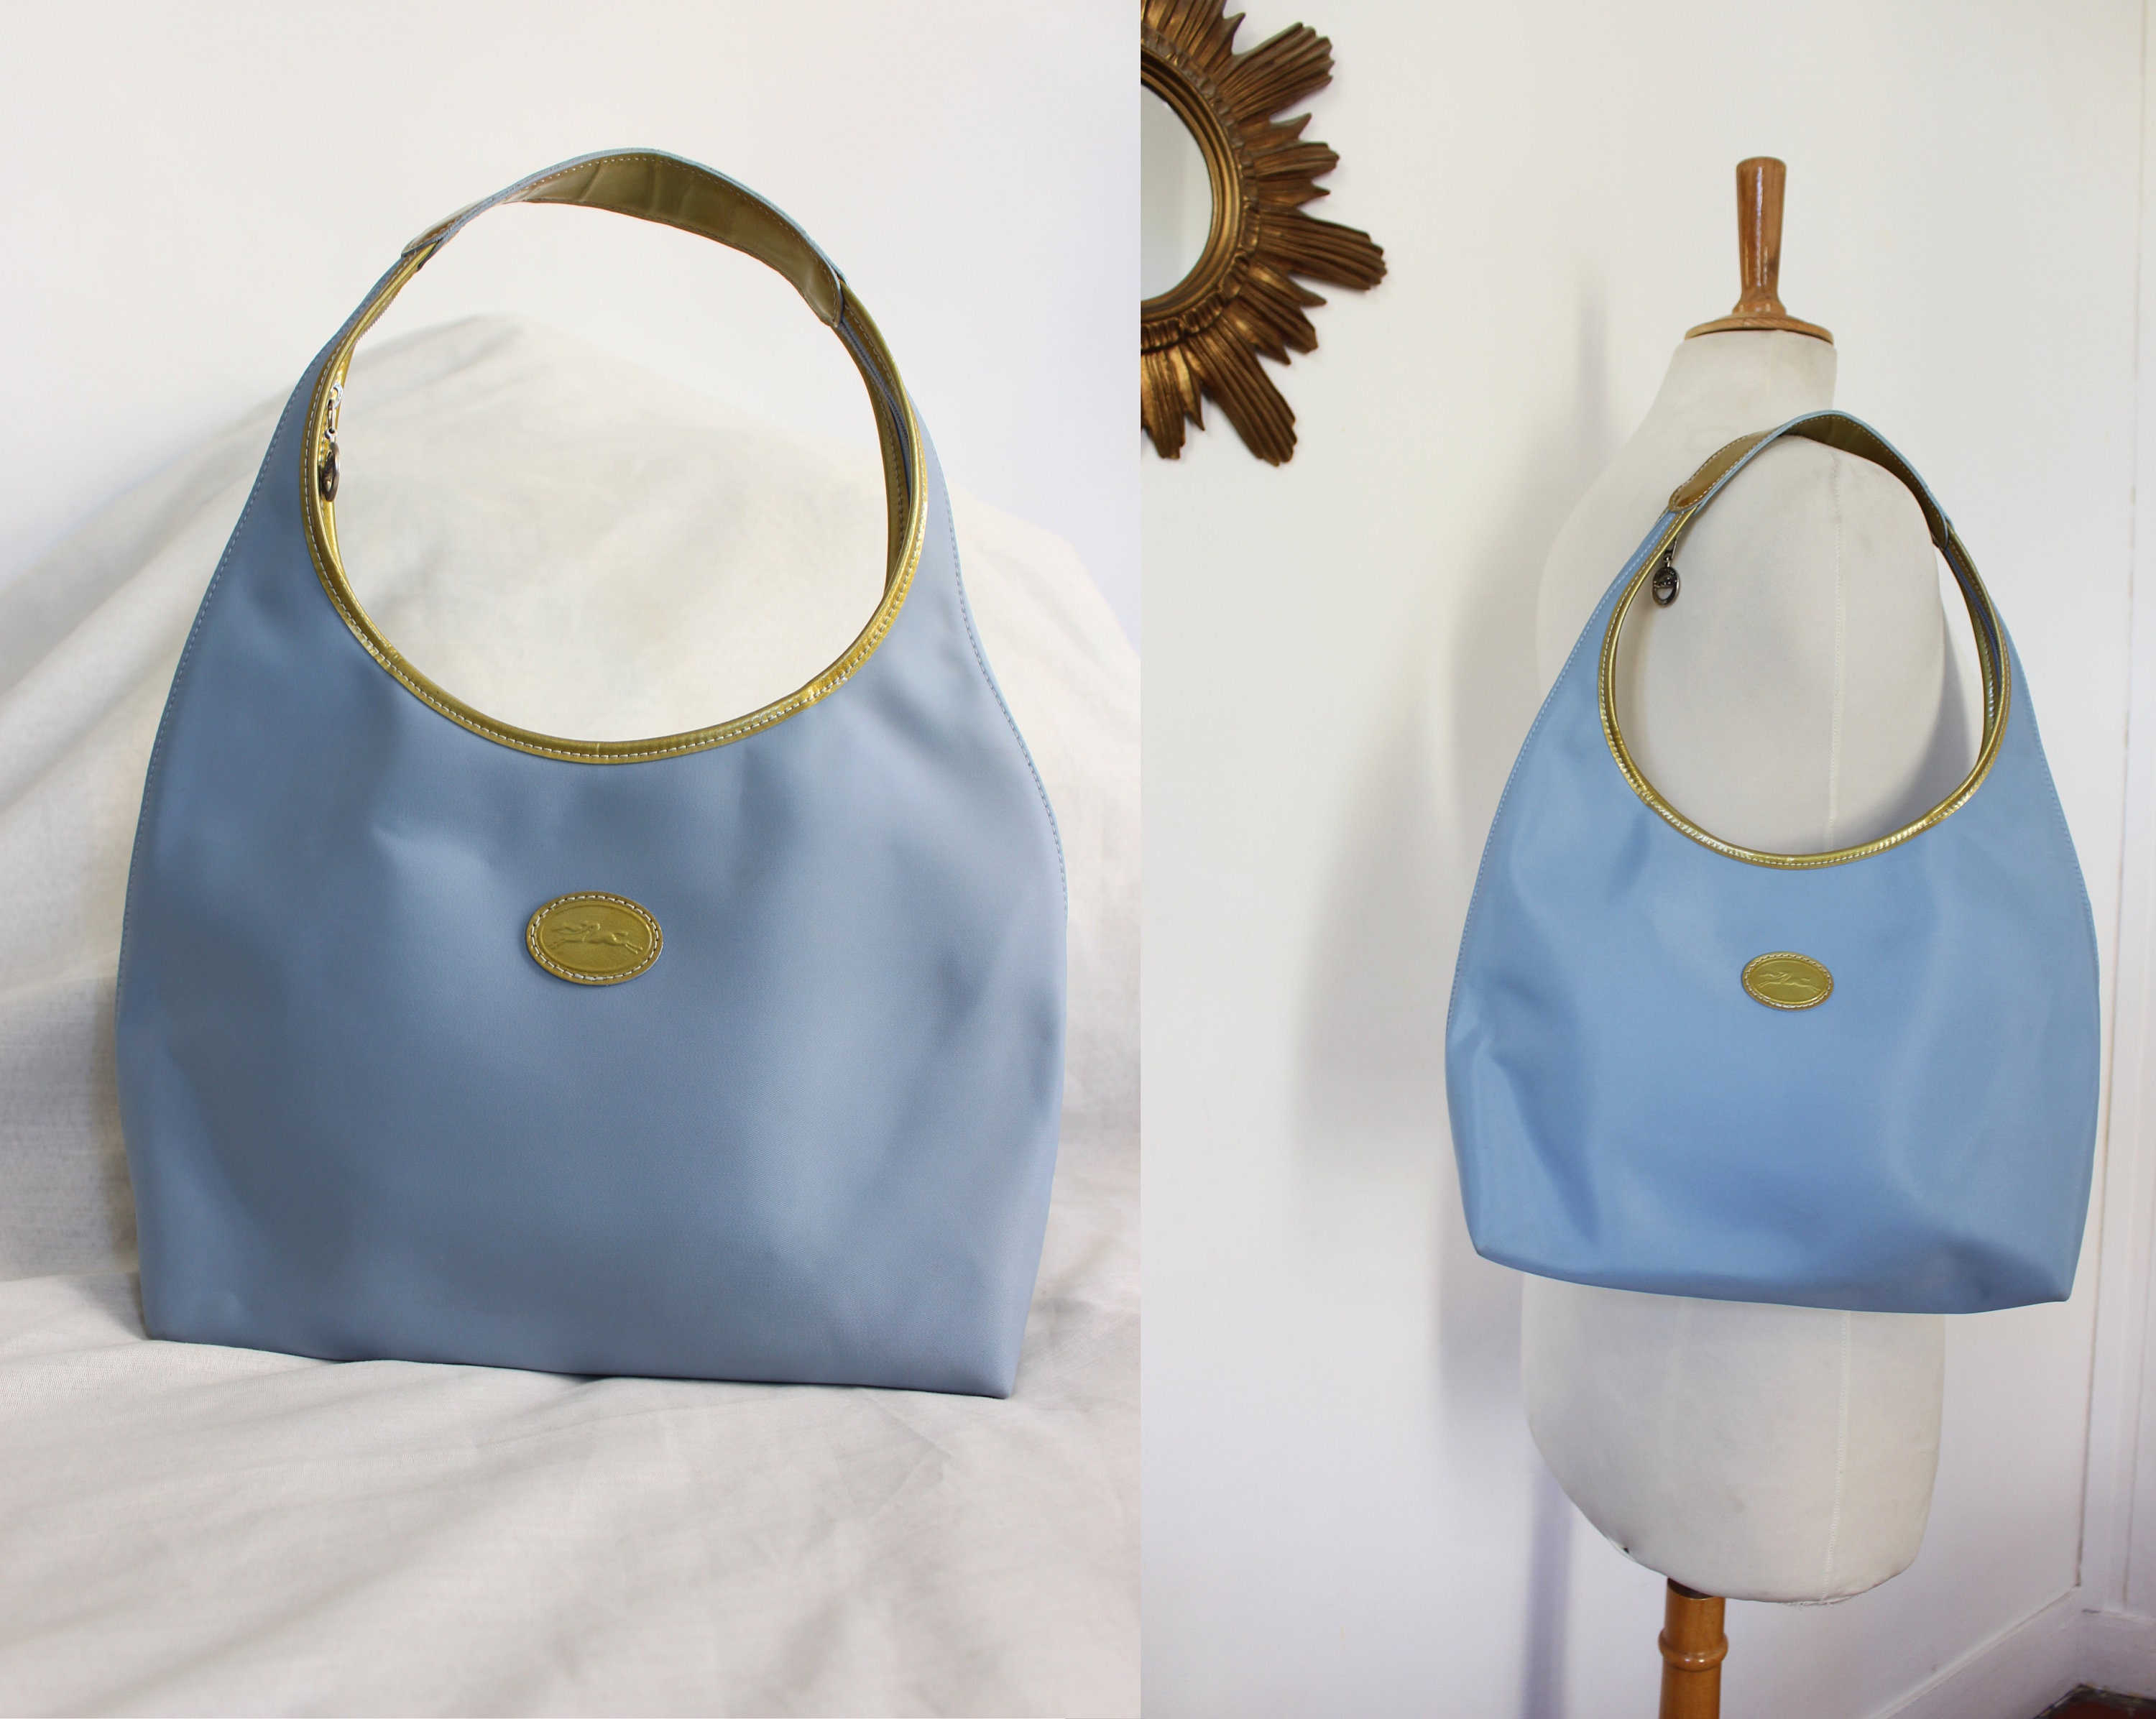 LONGCHAMP 1948 Vintage Hobo Baguette Handbag in Light Blue -  UK